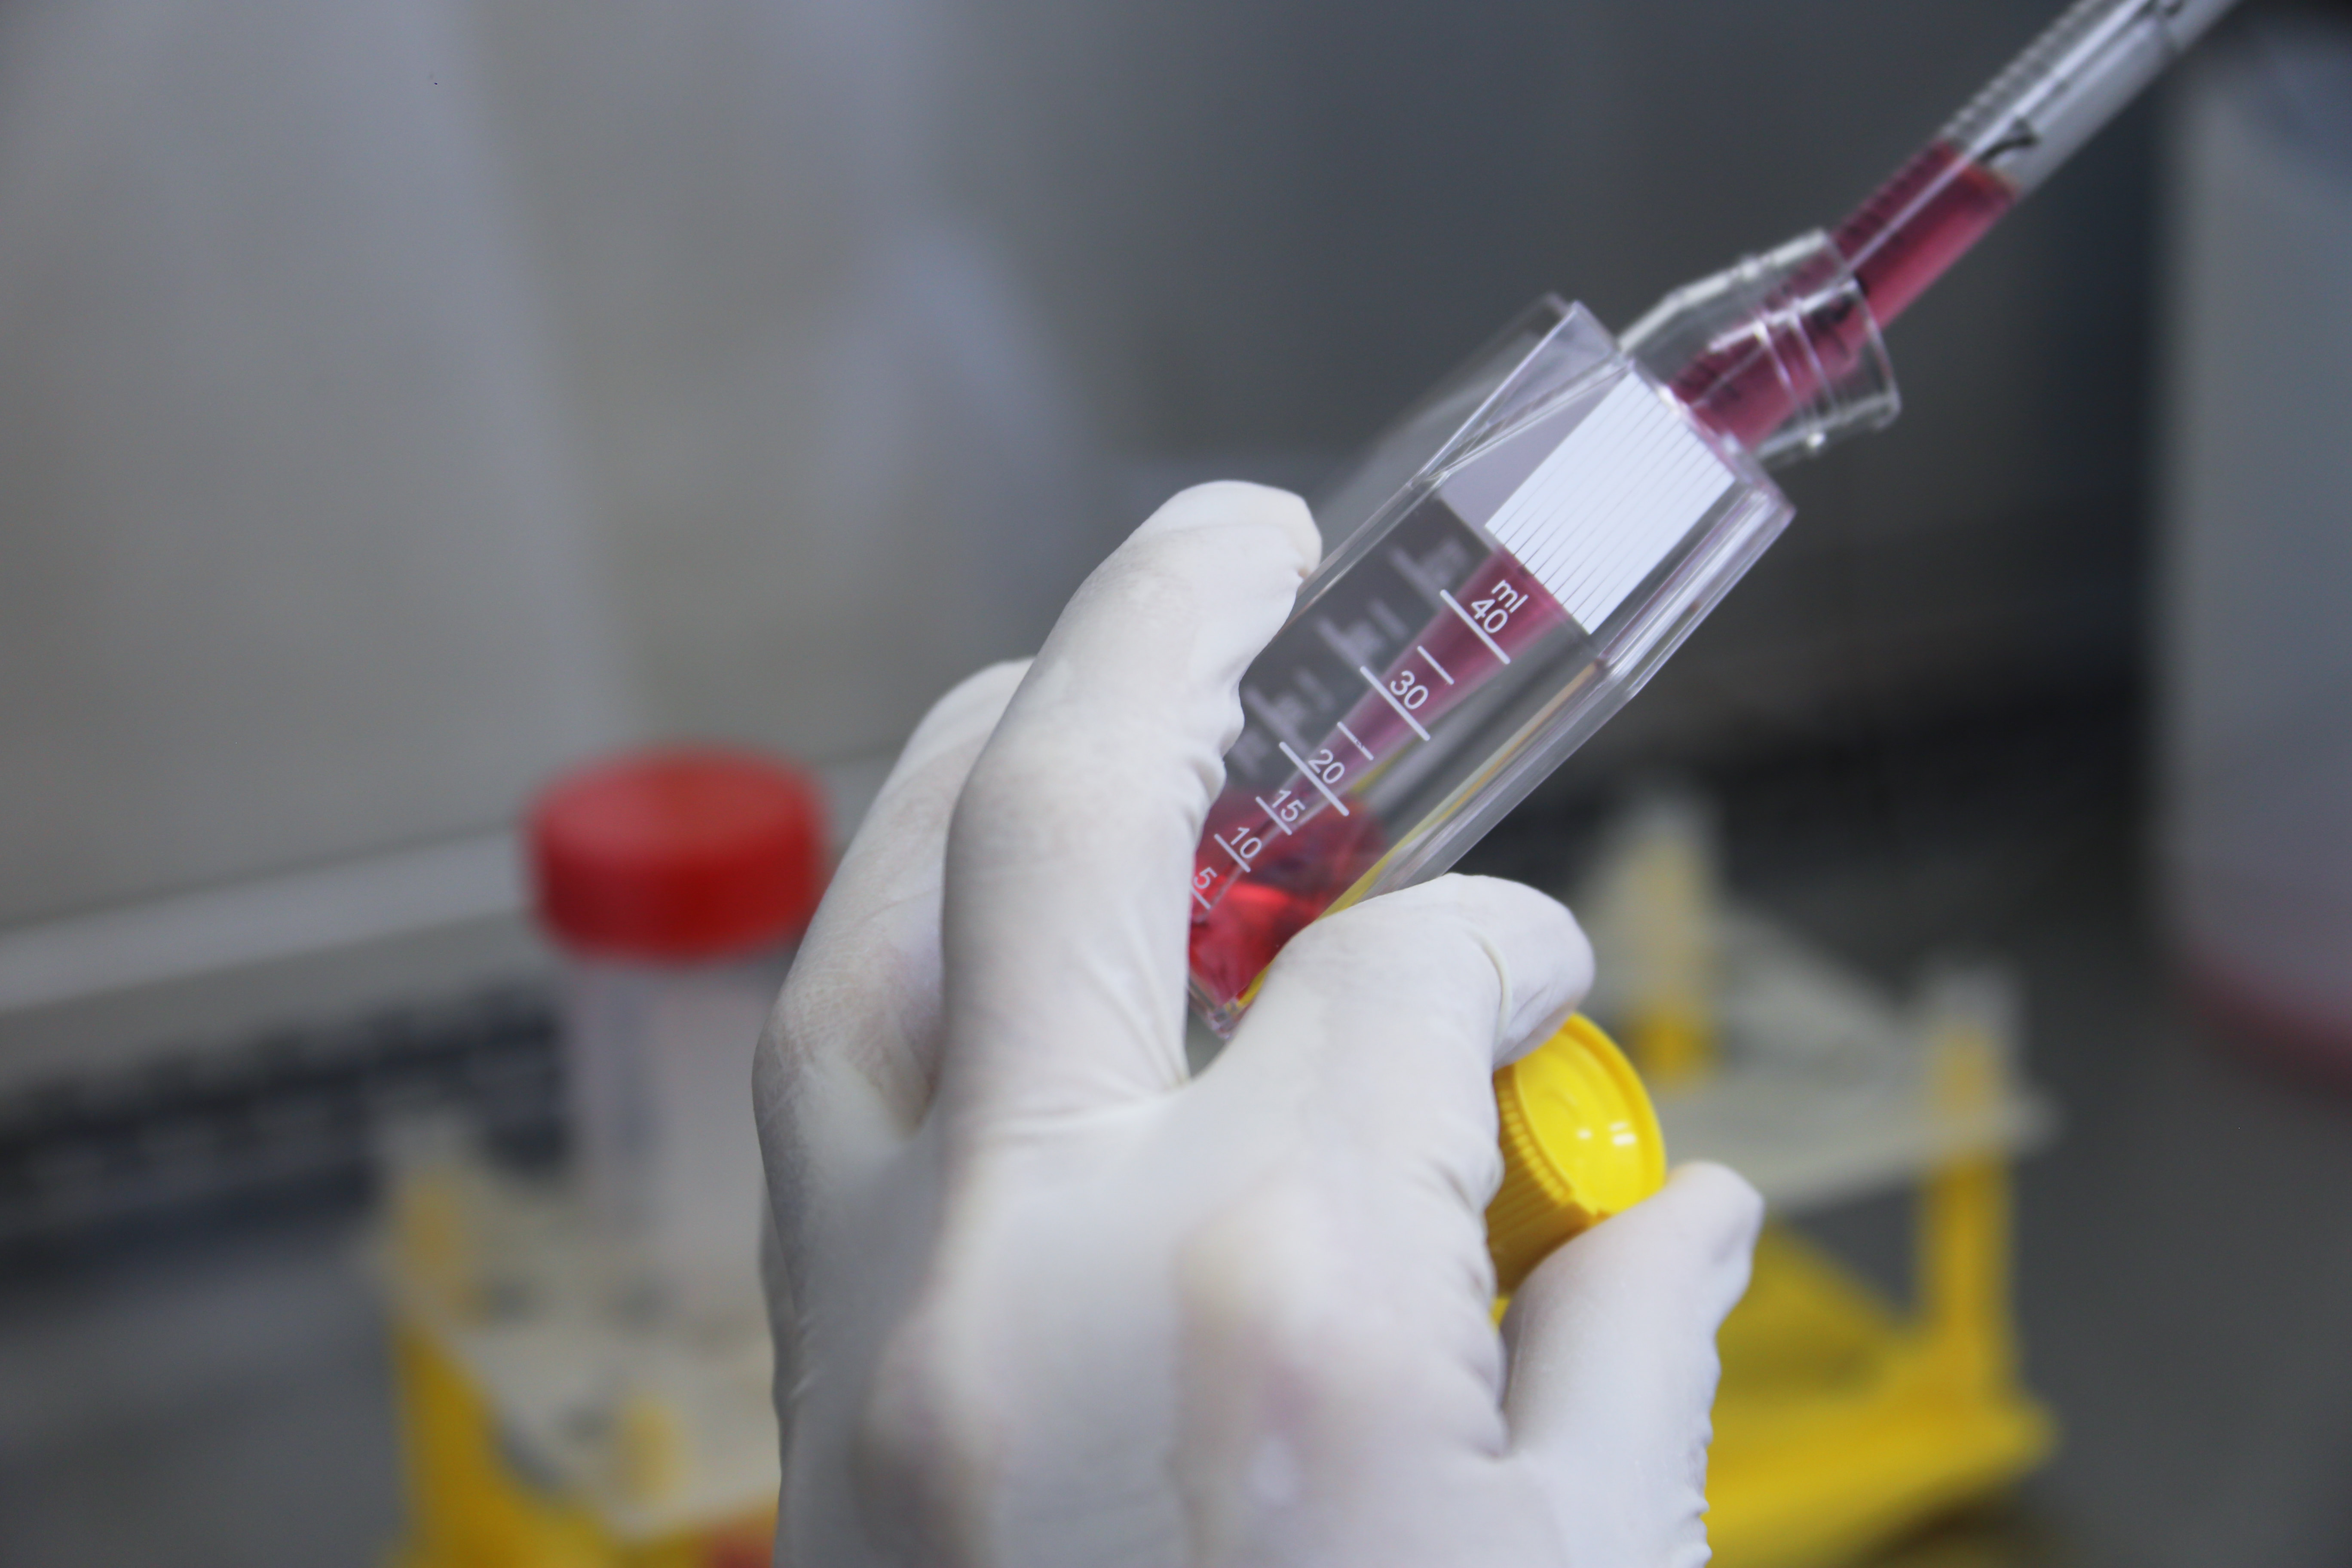 Vacina contra Covid-19 desenvolvida por empresa brasileira em parceria com companhia americana recebe apoio da Anvisa para testes em humanos